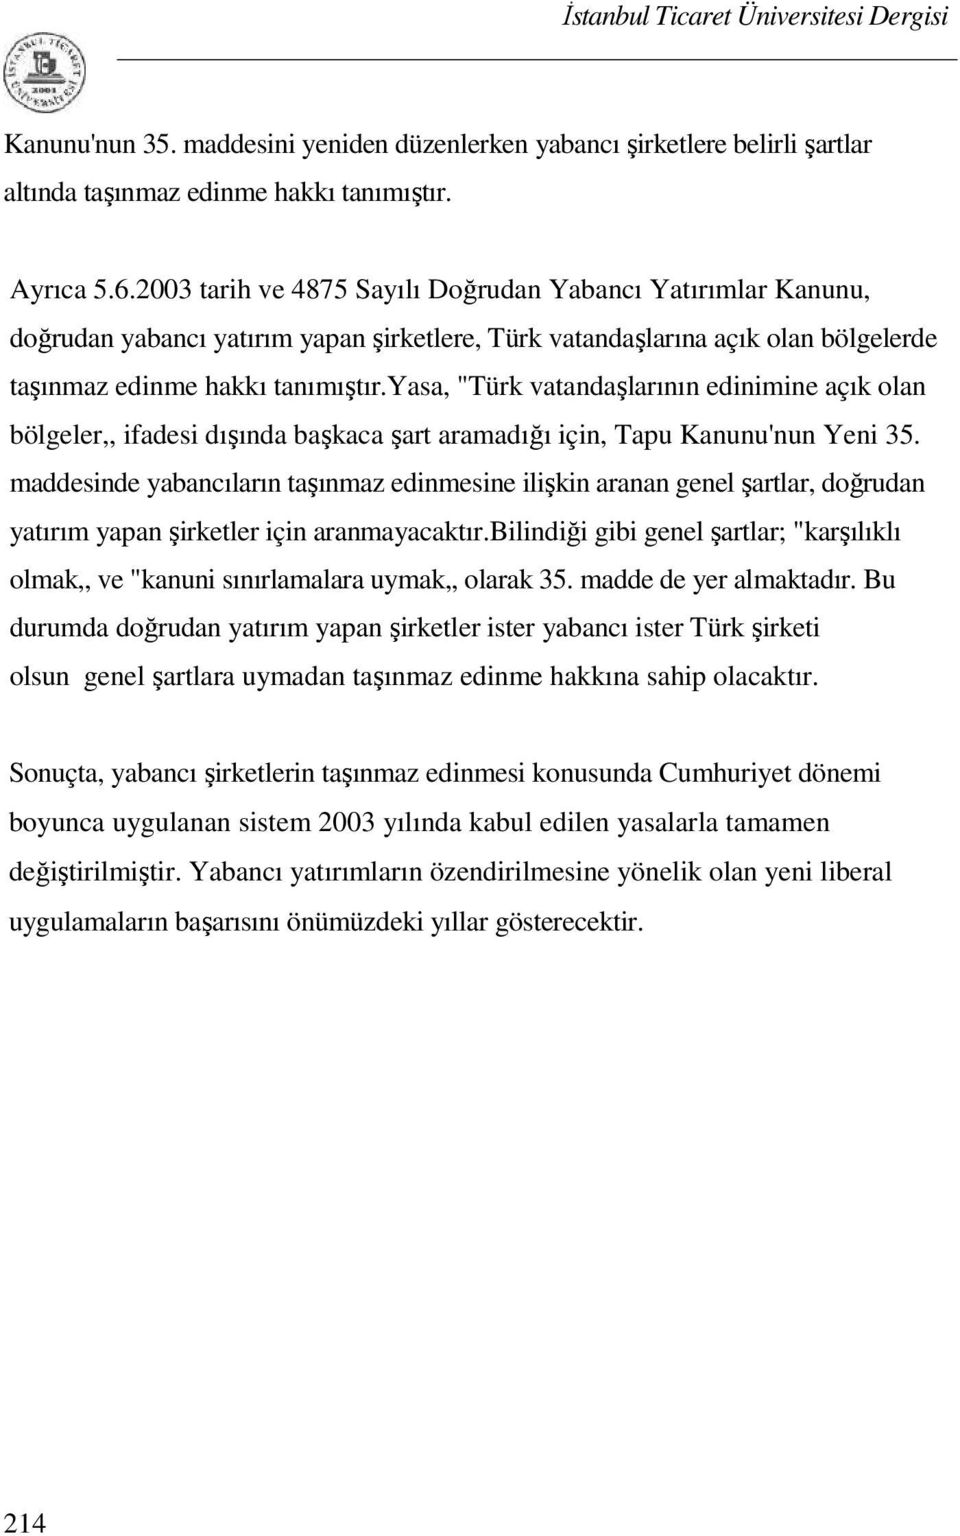 yasa, "Türk vatandaşlarının edinimine açık olan bölgeler,, ifadesi dışında başkaca şart aramadığı için, Tapu Kanunu'nun Yeni 35.